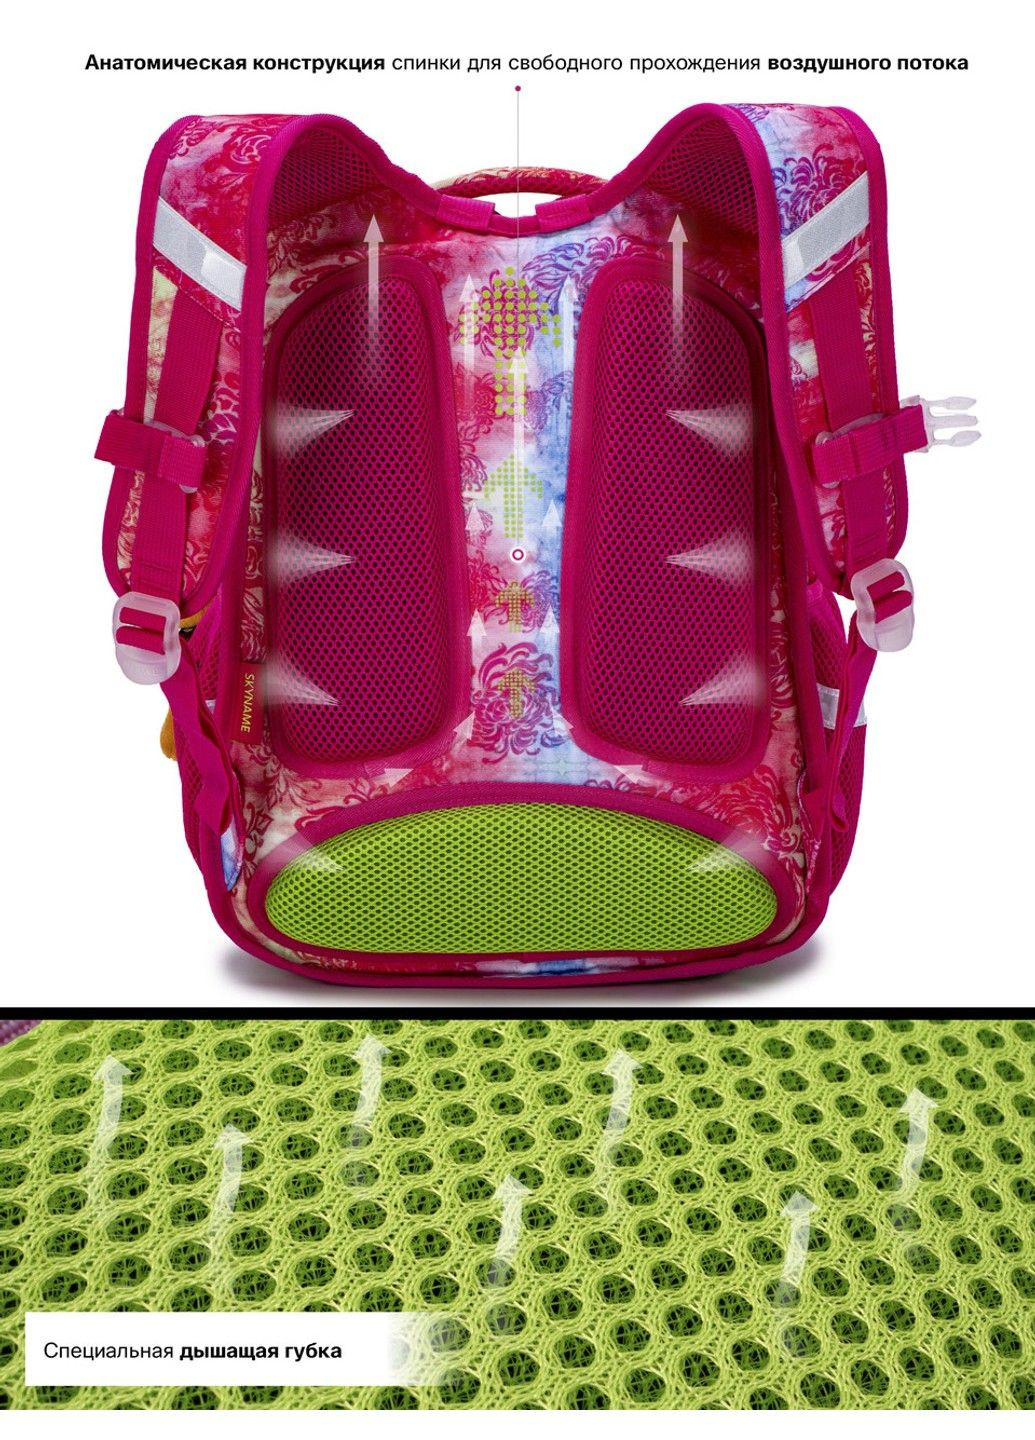 Шкільний рюкзак для дівчаток R1-025 SkyName (278404628)